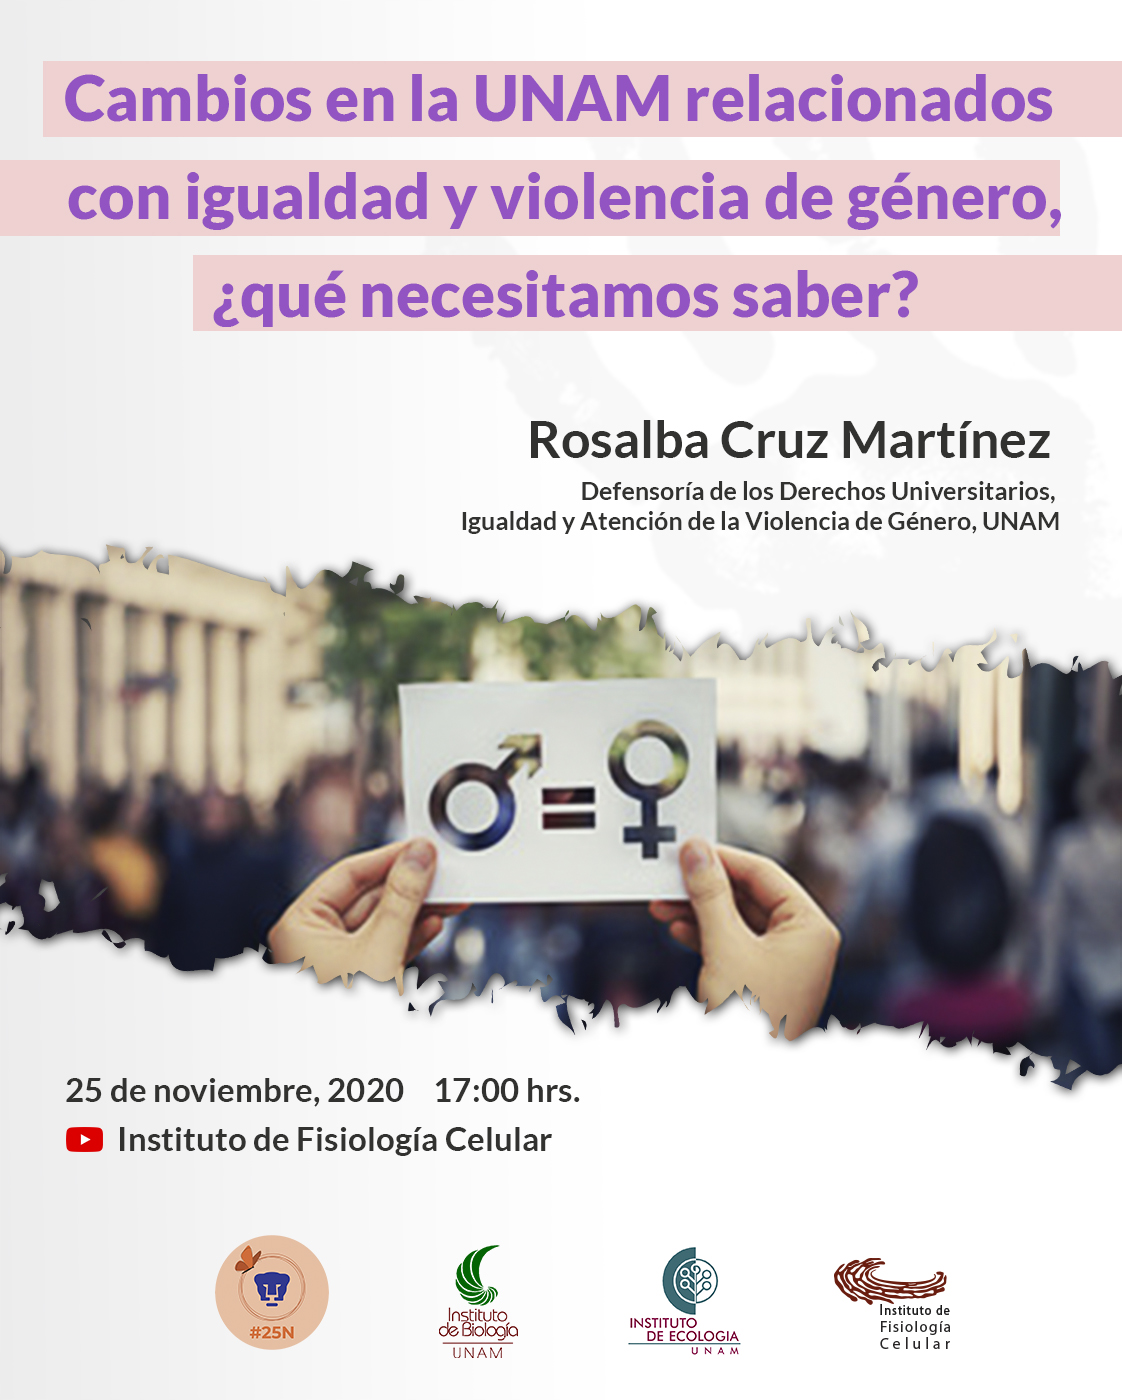 Cambios en la UNAM relacionados con igualdad y violencia de género ¿Qué necesitamos saber? Ponente: Rosalba Cruz Martínez, abogada integrante de la Defensoría de los Derechos Universitarios, Igualdad y Atención de la Violencia de Género, UNAM.